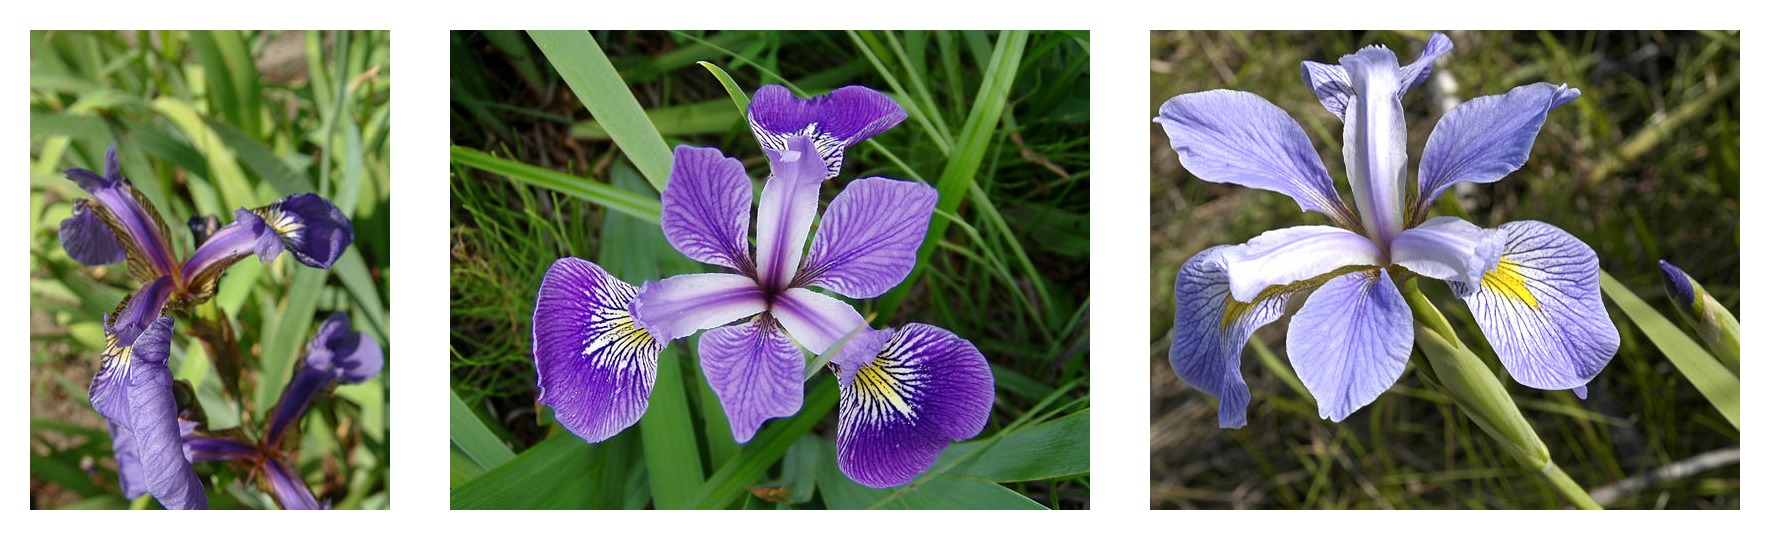 Üç iris türü için karşılaştırıldığında petal geometrisi: Iris setosa, Iris virginica ve Iris versicolor